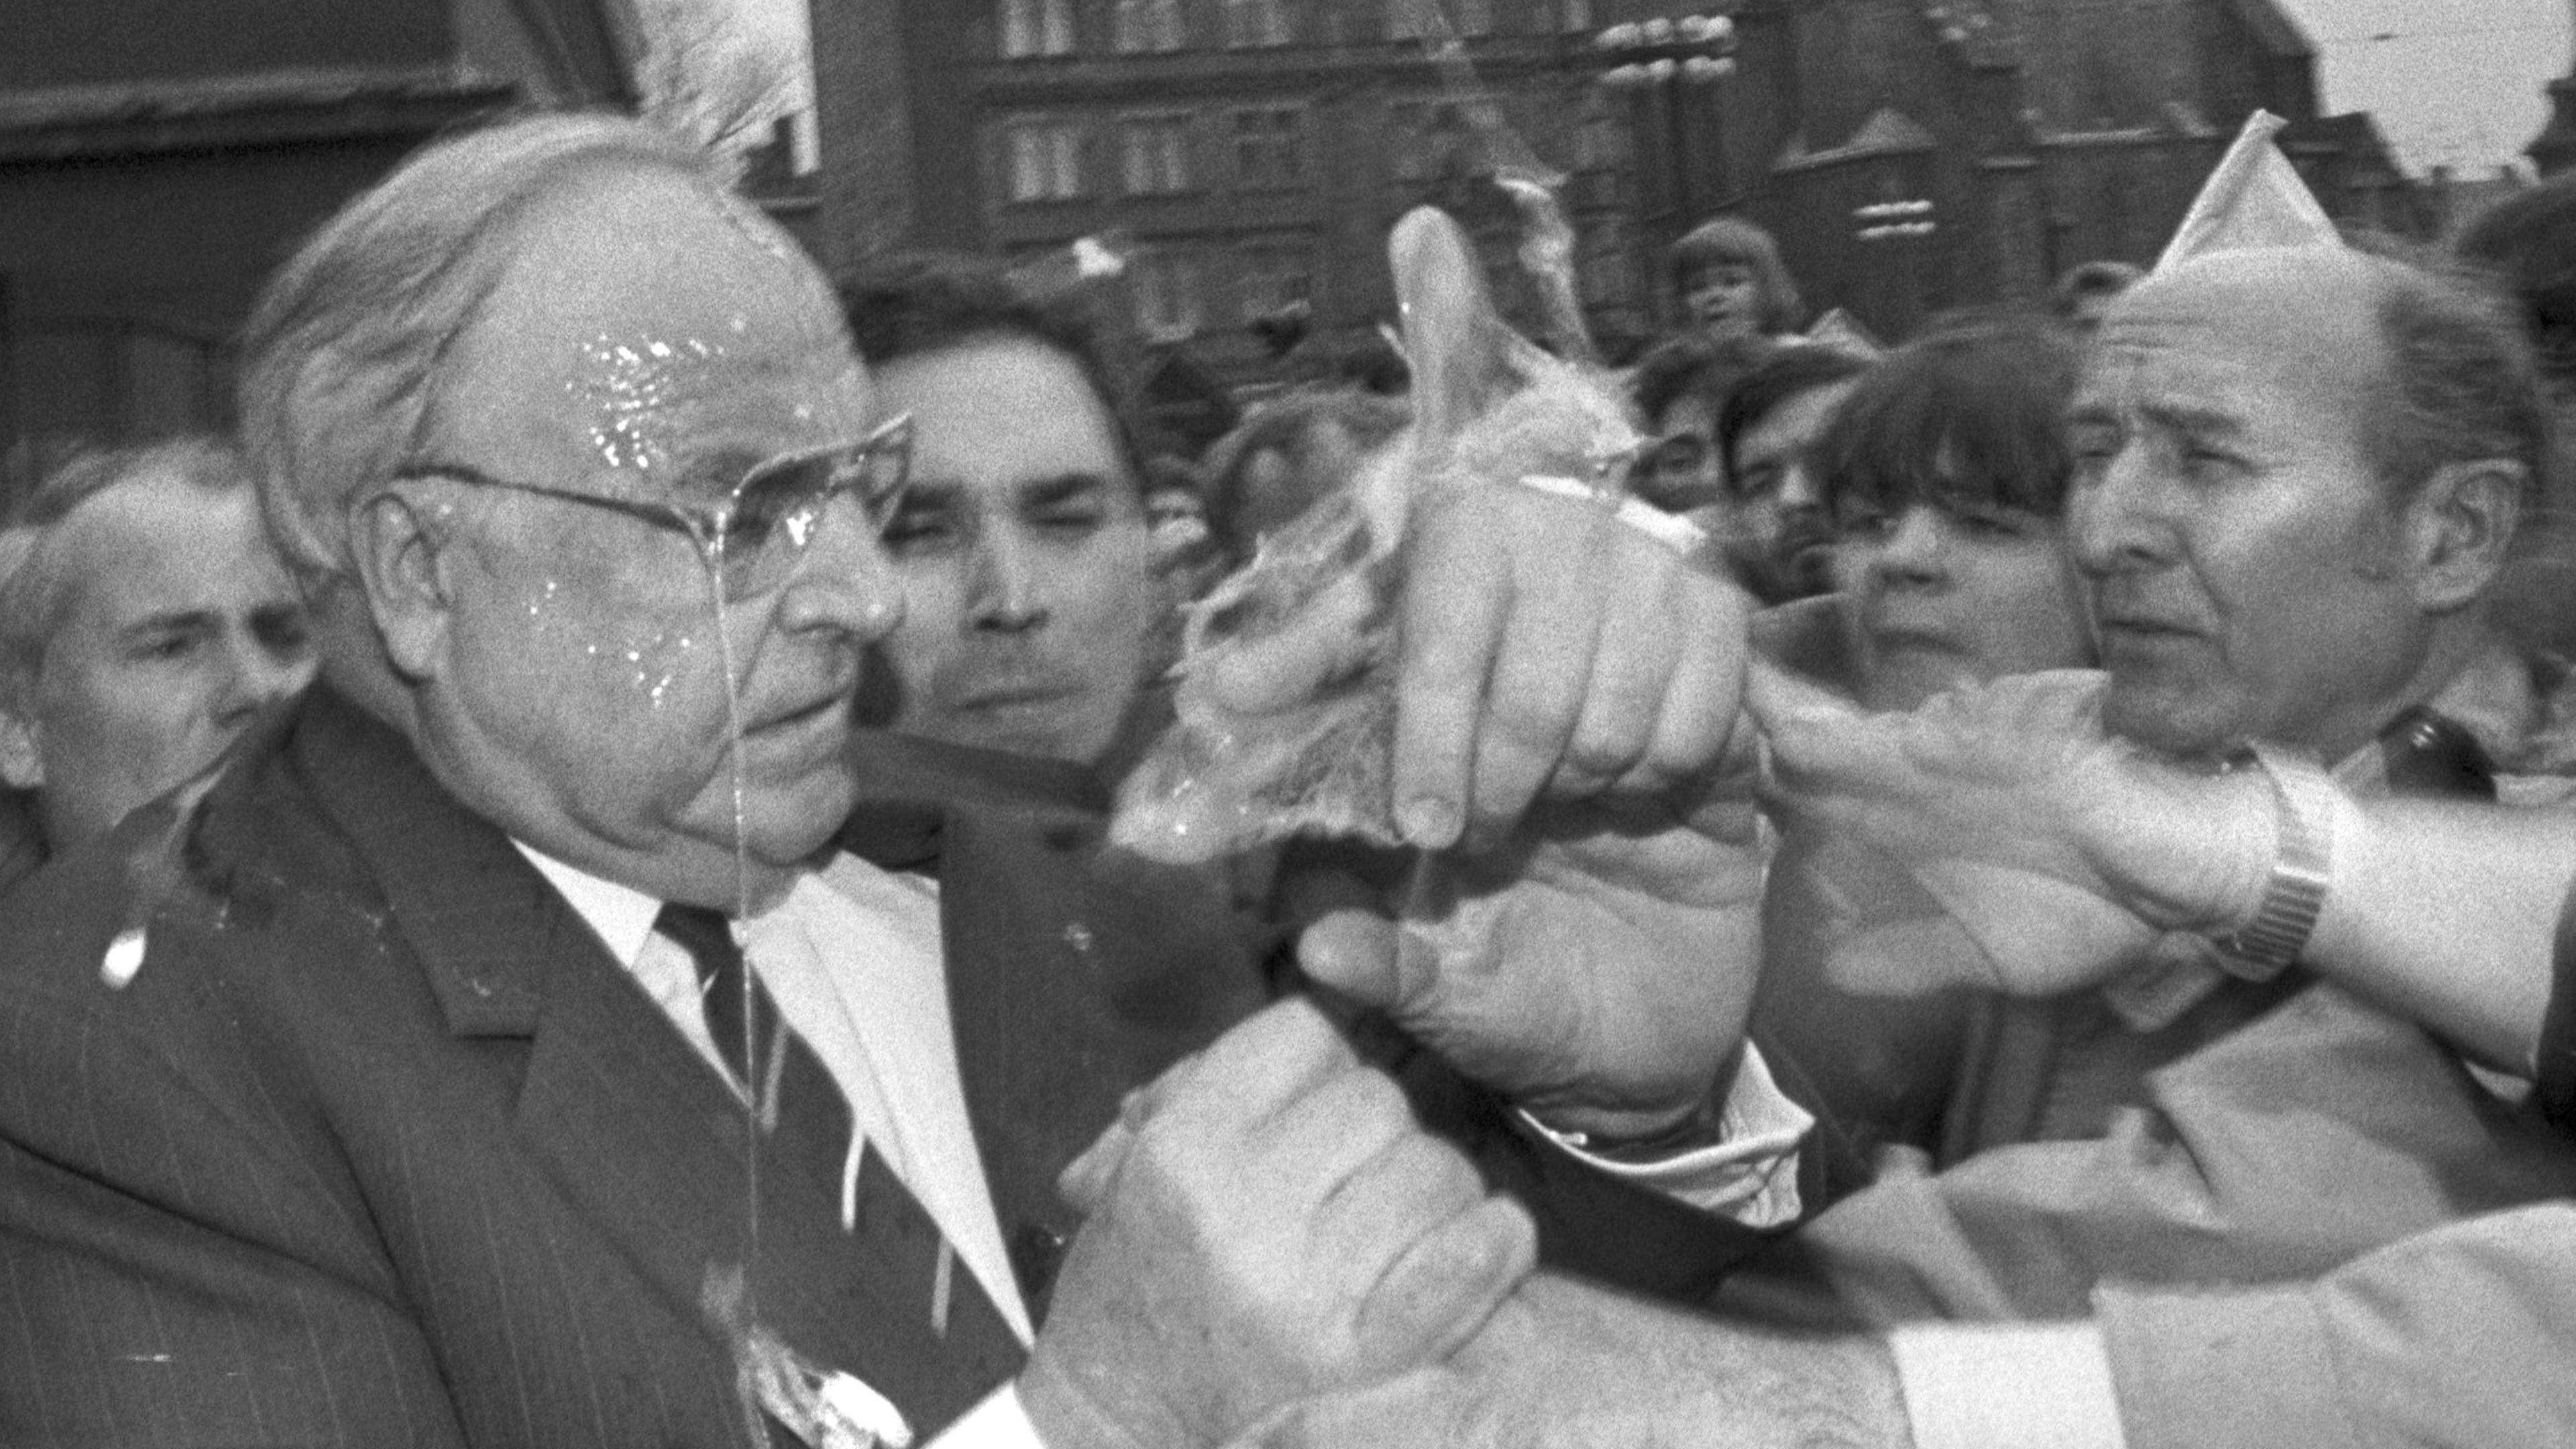 Das Eiweiß tropft Bundeskanzler Helmut Kohl in Halle von der Brille, während er versucht, den Eierwerfer in der ihm ansonsten zujubelnden Menge ausfindig zu machen (Archivfoto vom 10.05.1991).